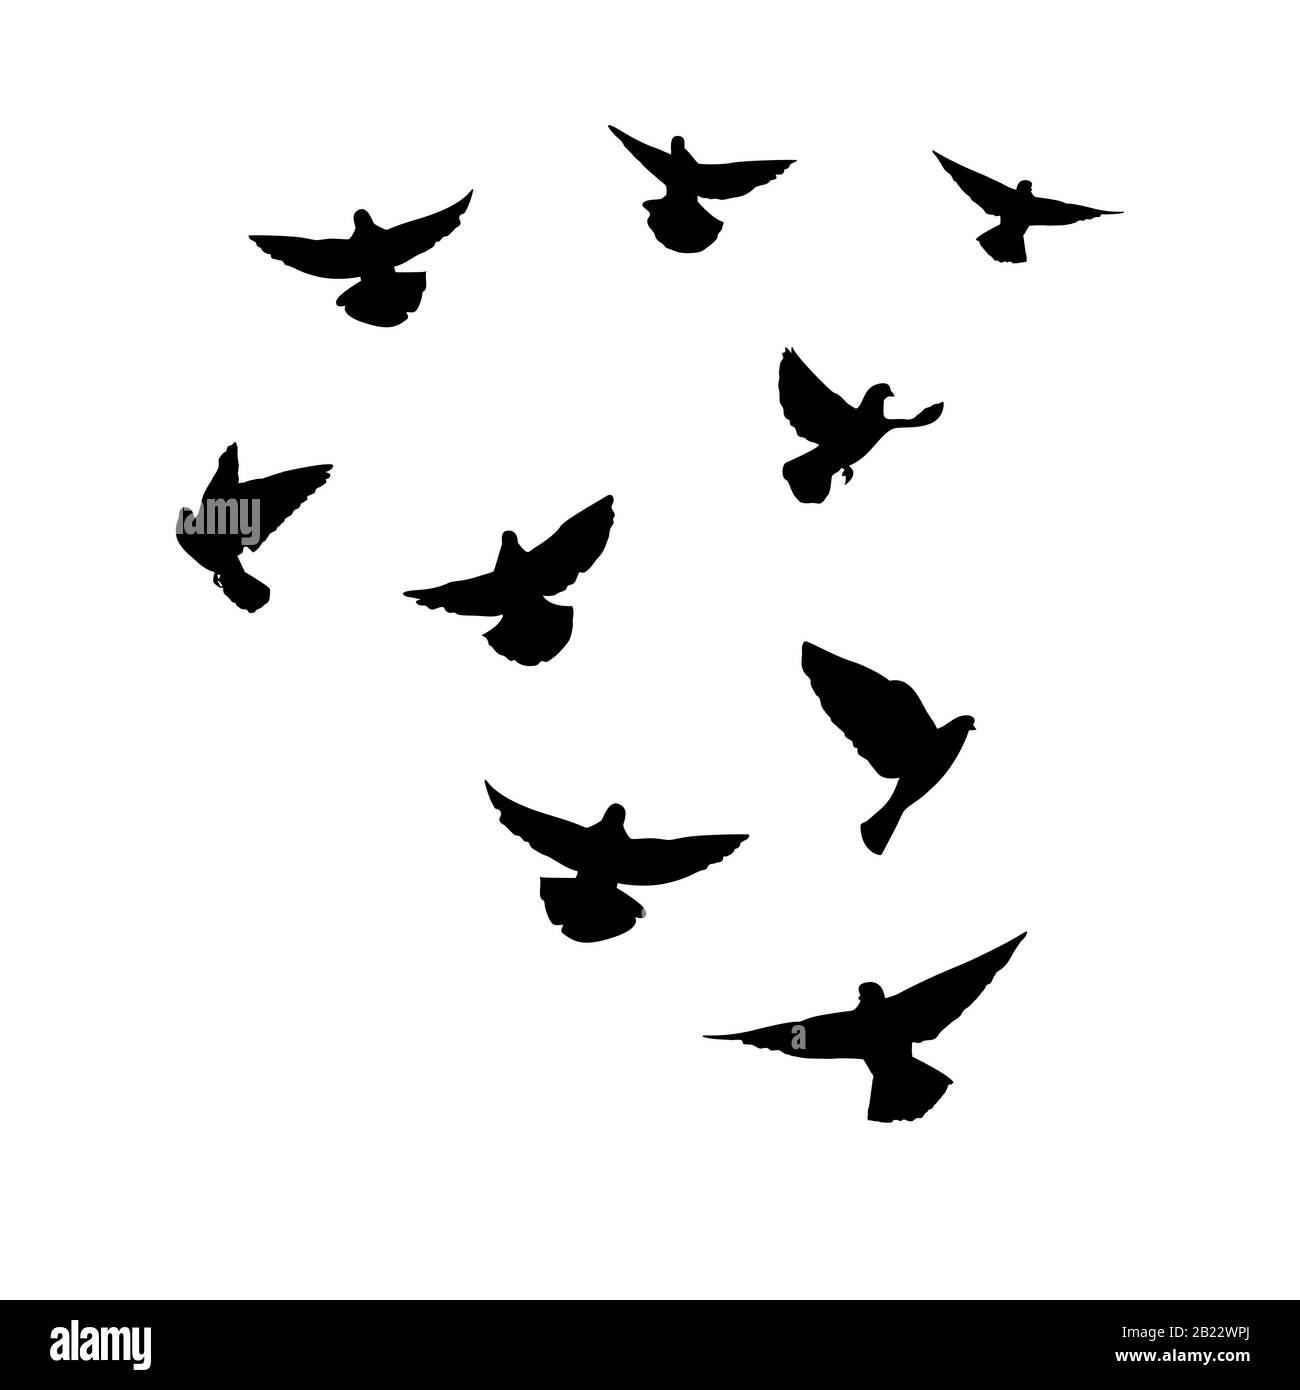 Le colombe stanno volando. Silhouette di piccioni che volano su uno sfondo bianco. Illustrazione del vettore Illustrazione Vettoriale